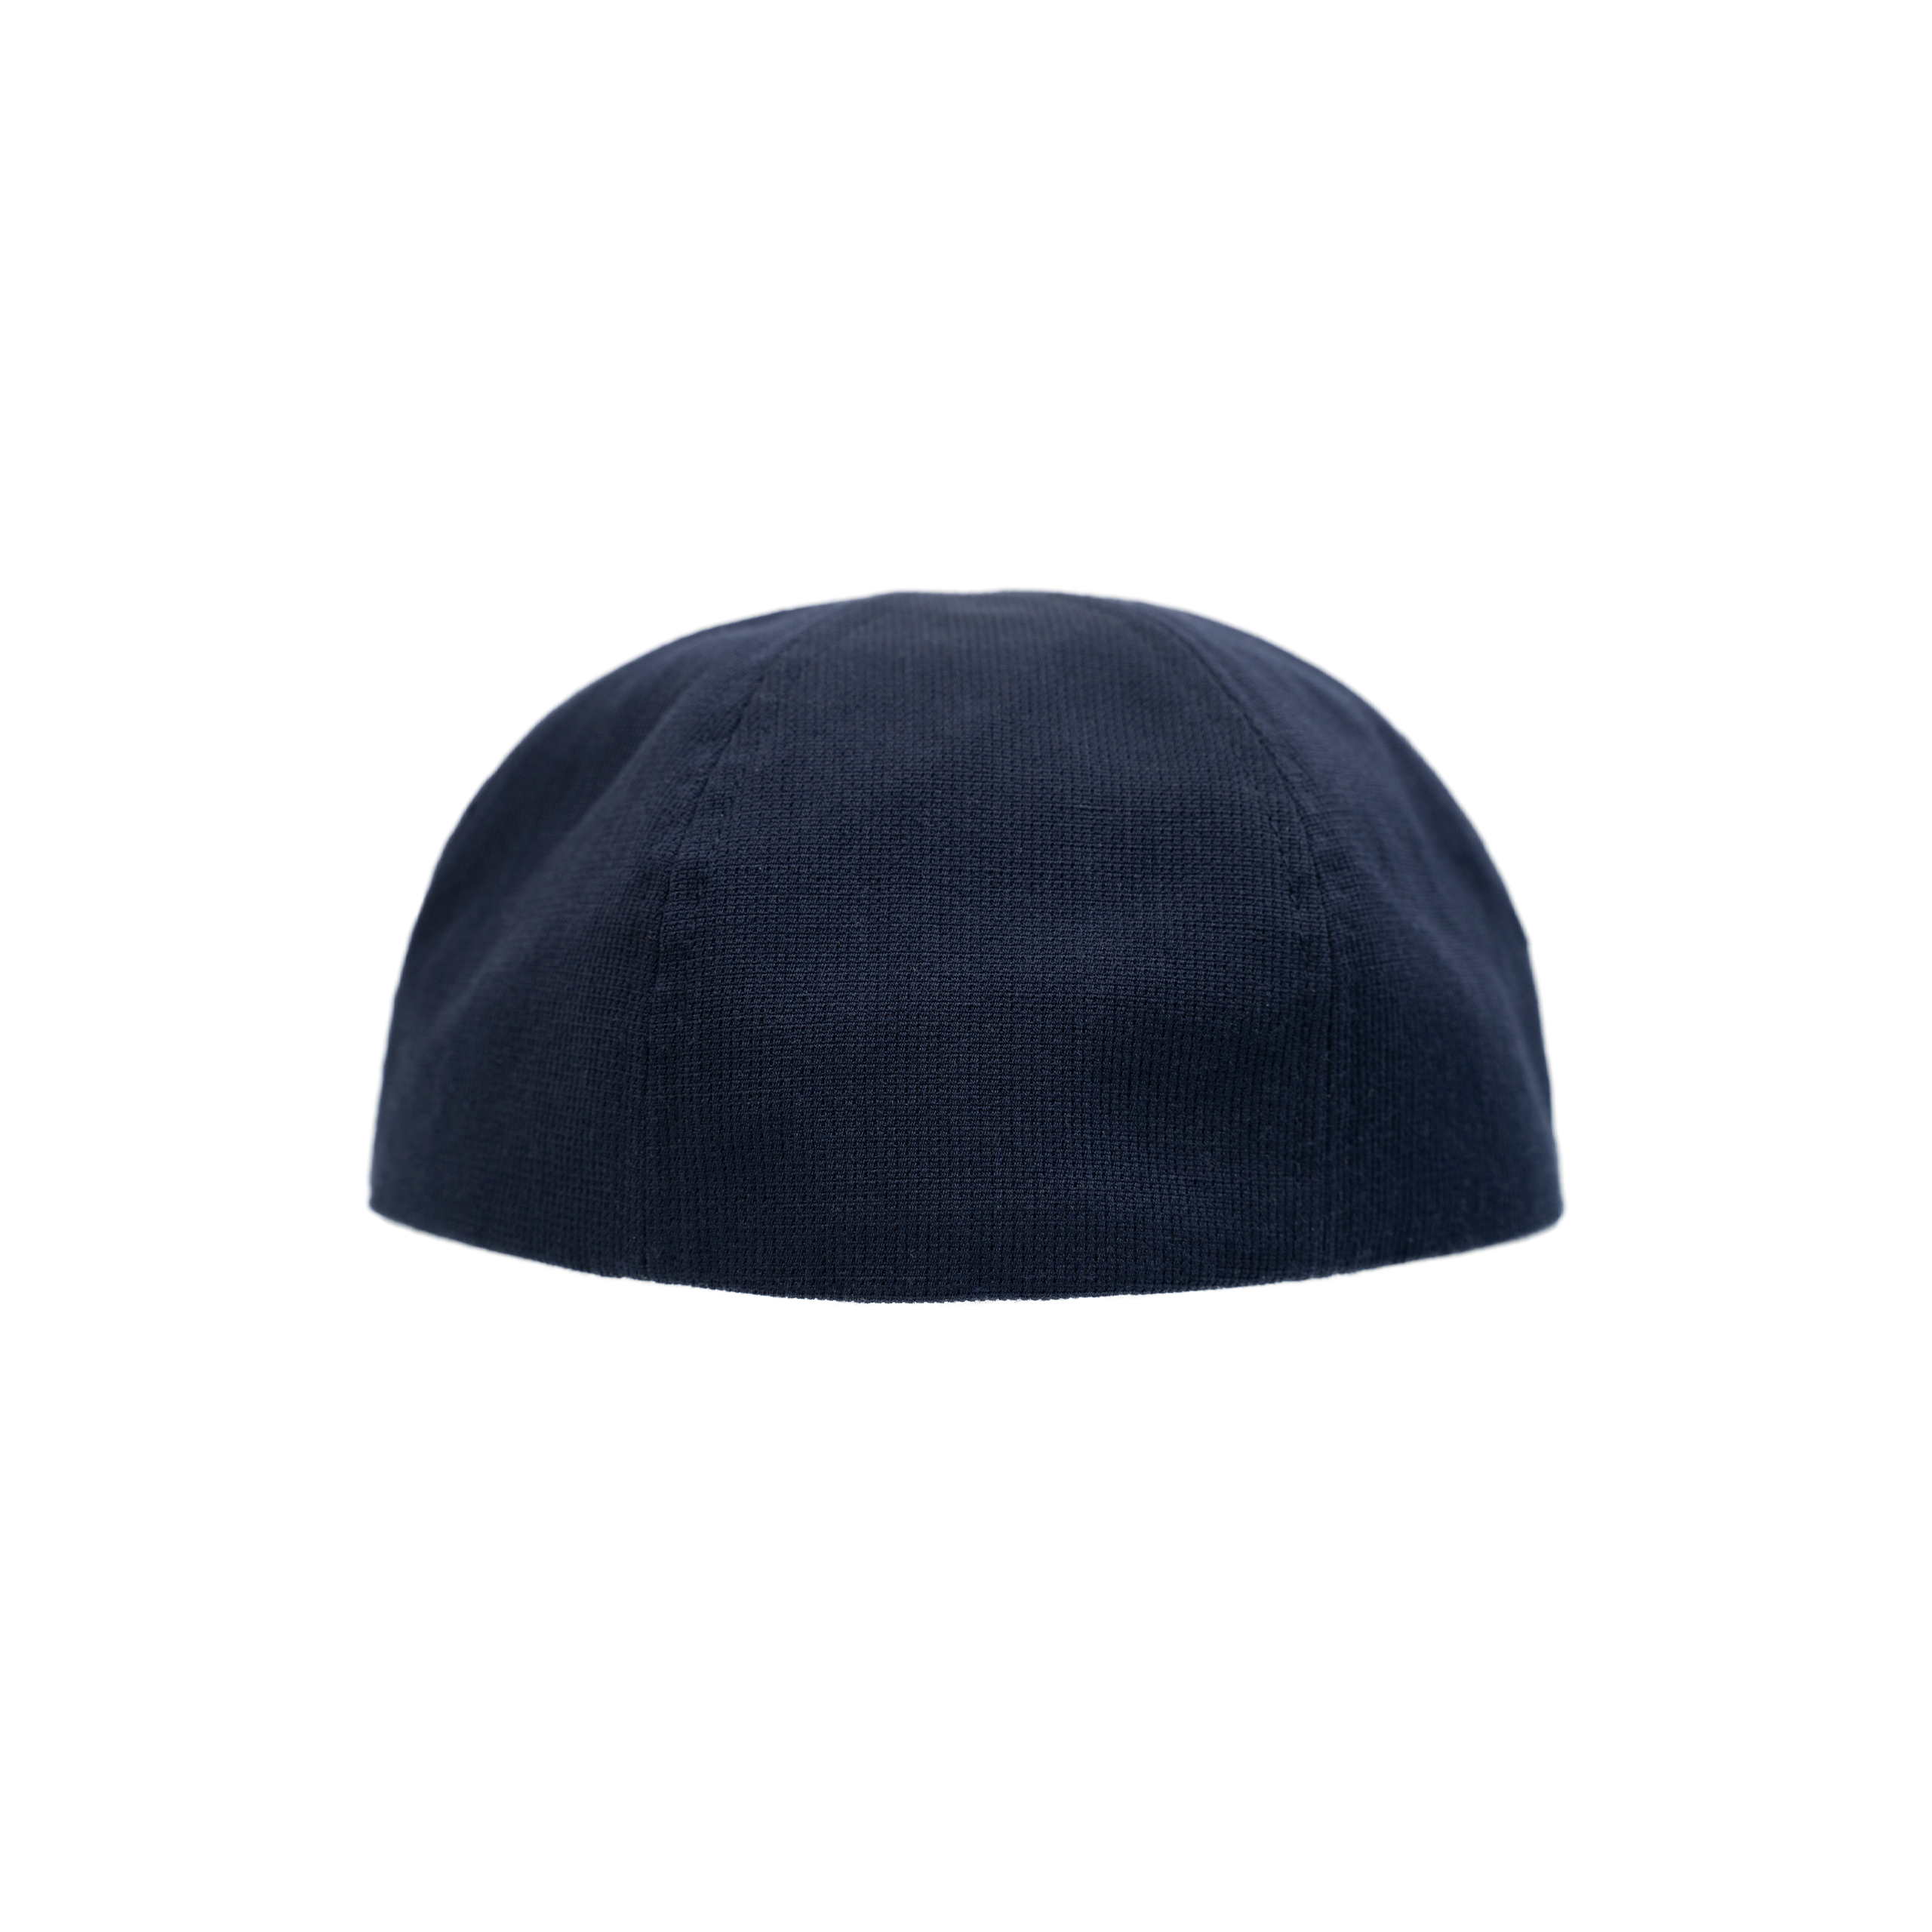 Buy visvim men blue сorduroy honus cap for $505 online on SV77 